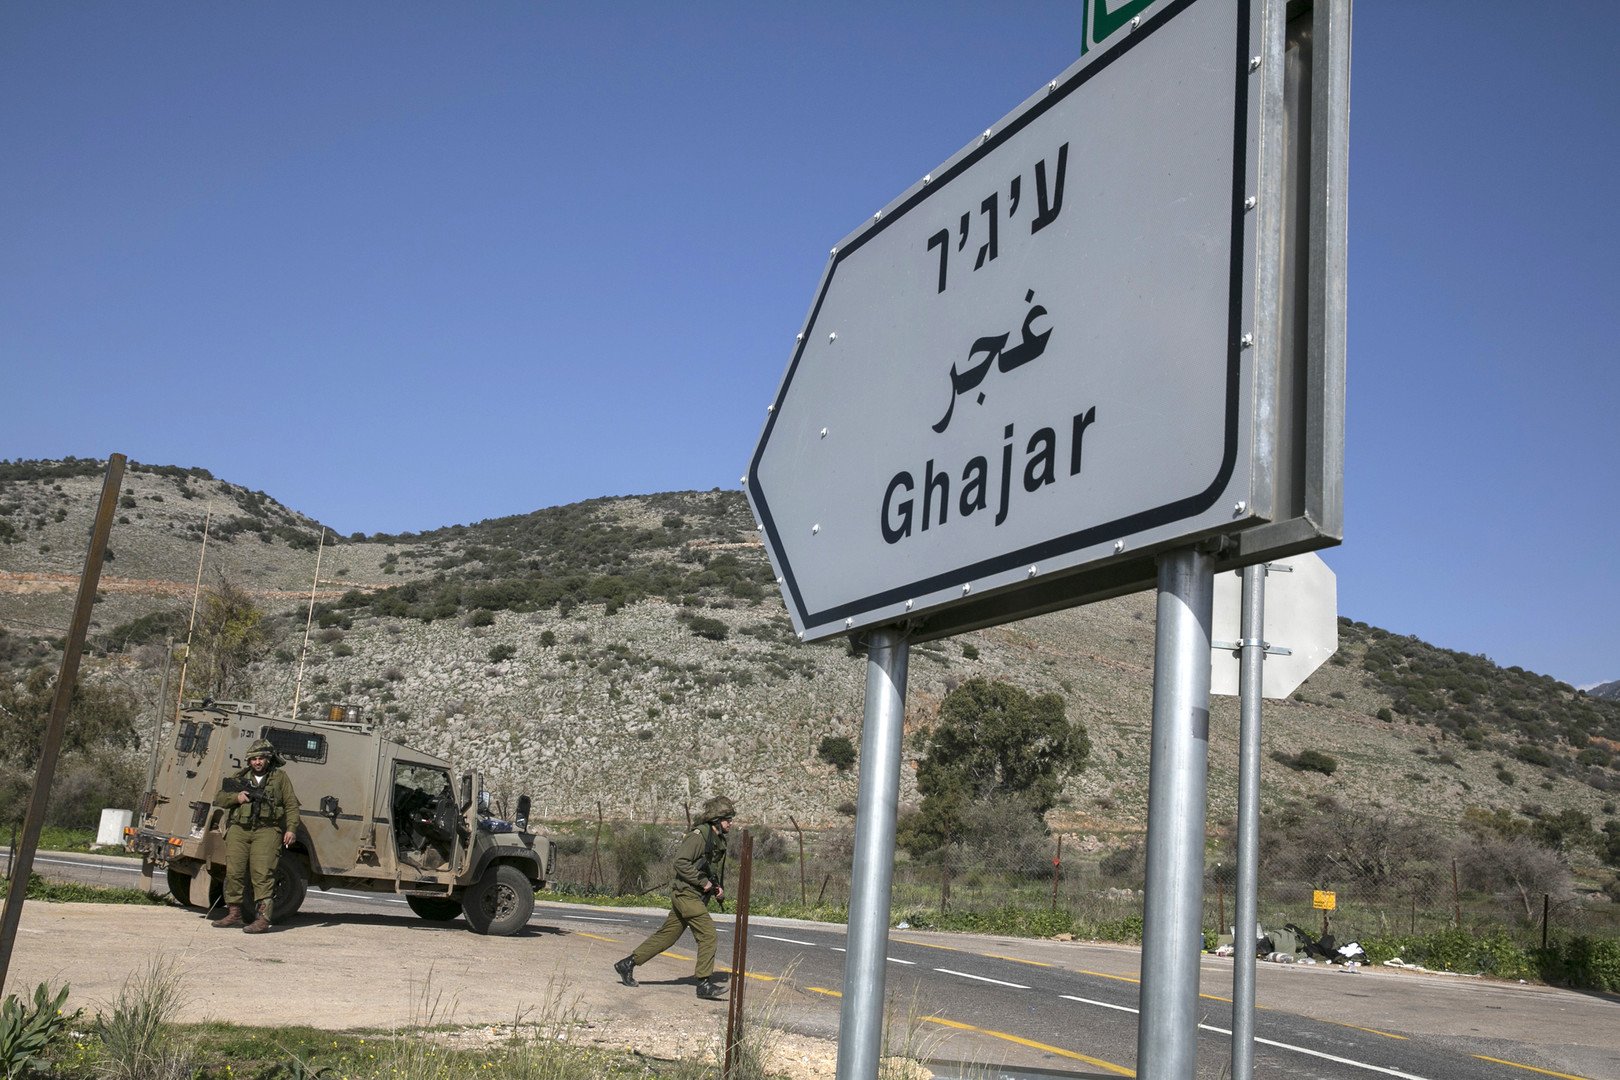 جنود اسرائيليون بالقرب من لوحة تشير إلى قرية الغجر على الحدود الاسرائيلية اللبنانية، 28 يناير 2015